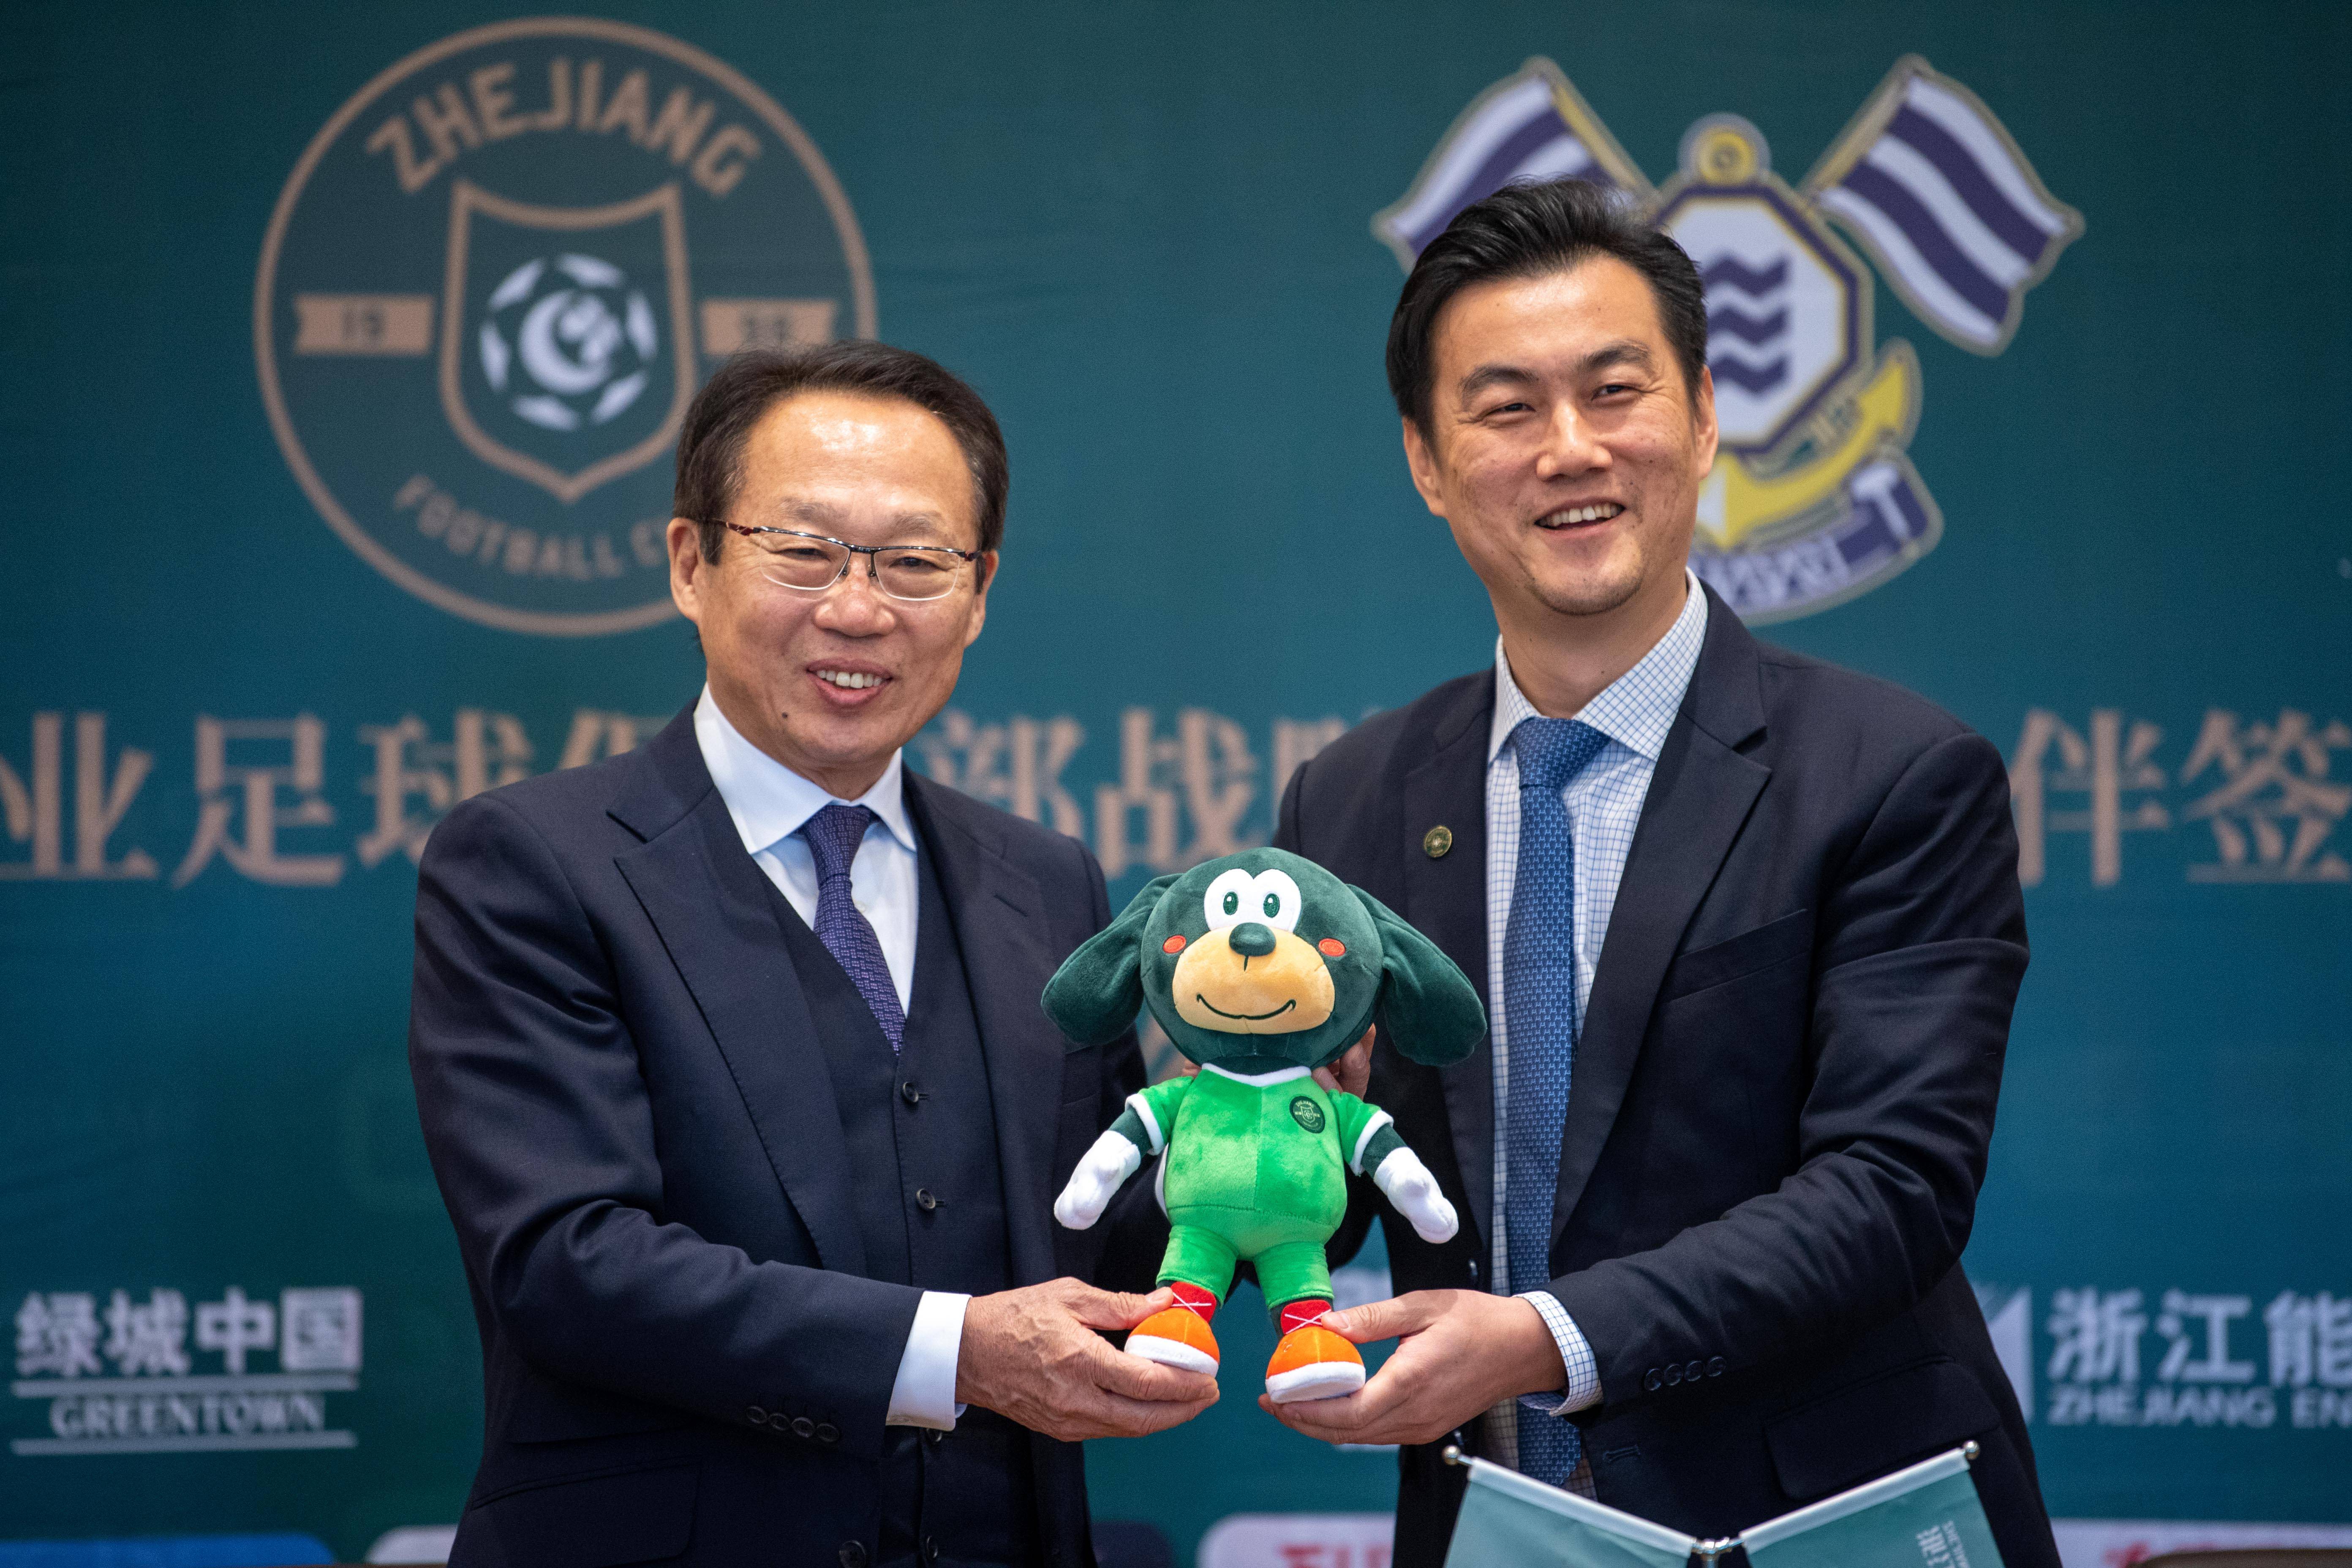 足球-浙江职业足球俱乐部与日本今治足球俱乐部签署青训合作新协议